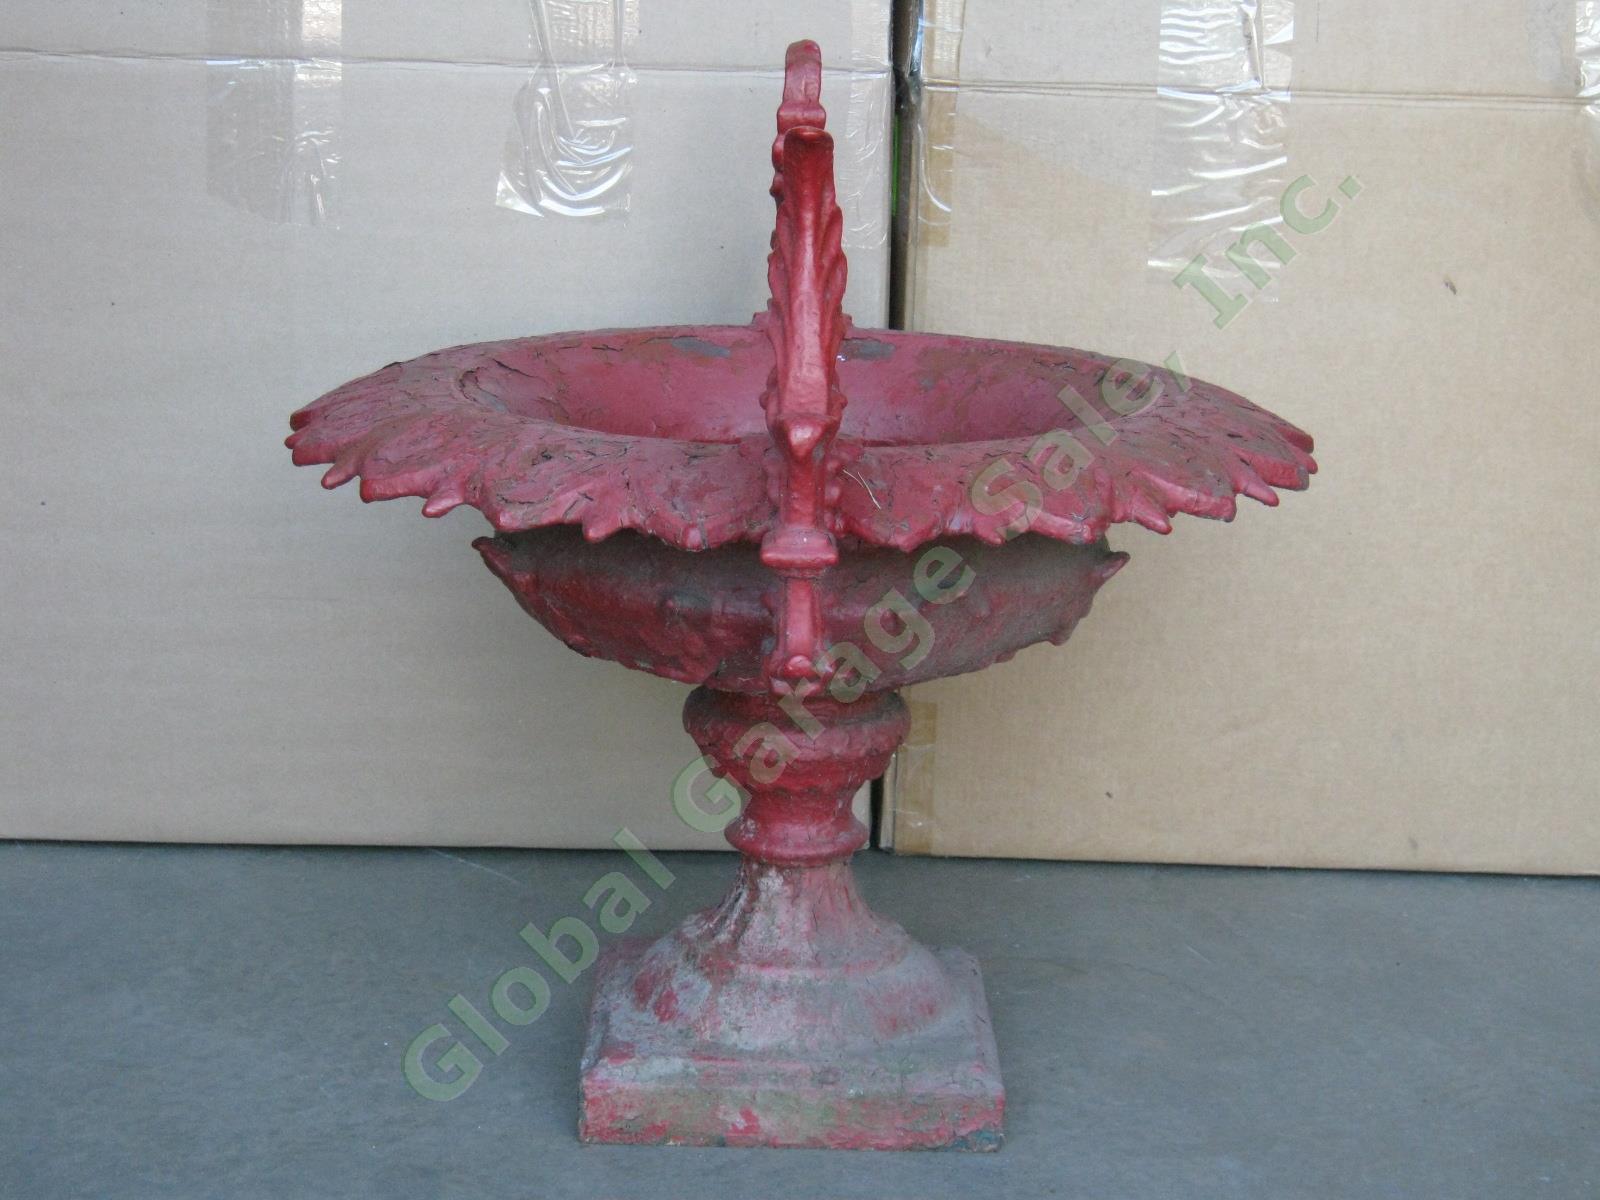 Gorgeous Vintage Antique Ornate Cast Iron Garden Urn Planter Bird Bath 24" Tall 4